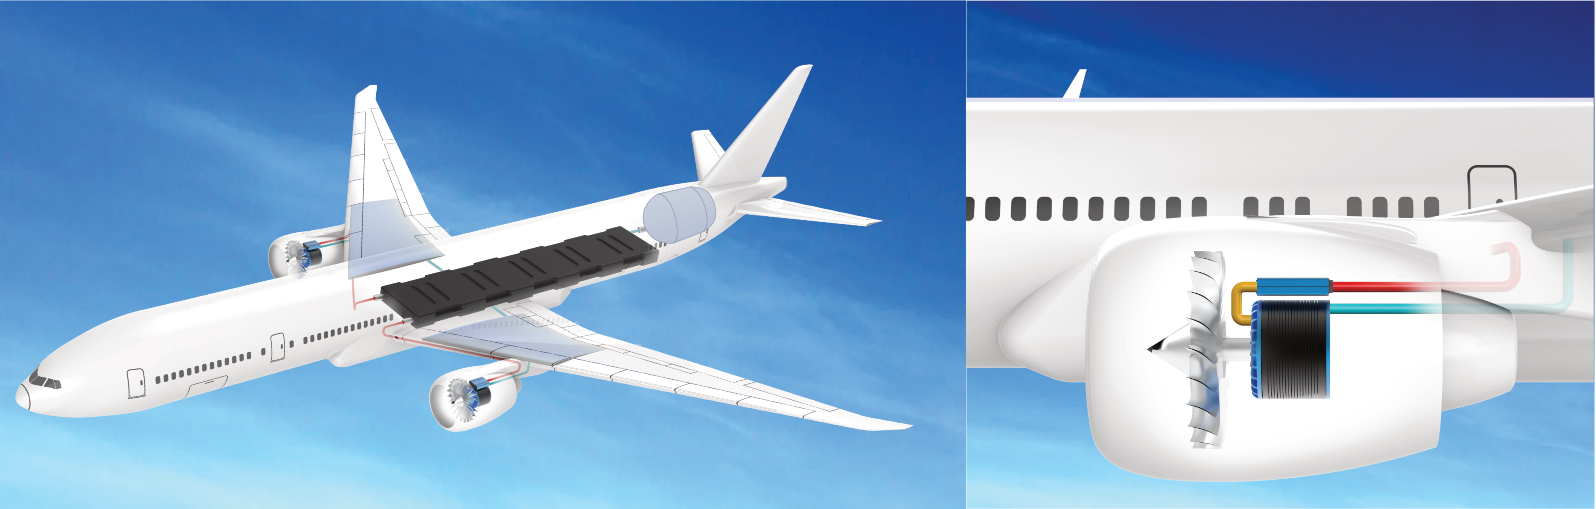 Hydrogen airplane. illustration